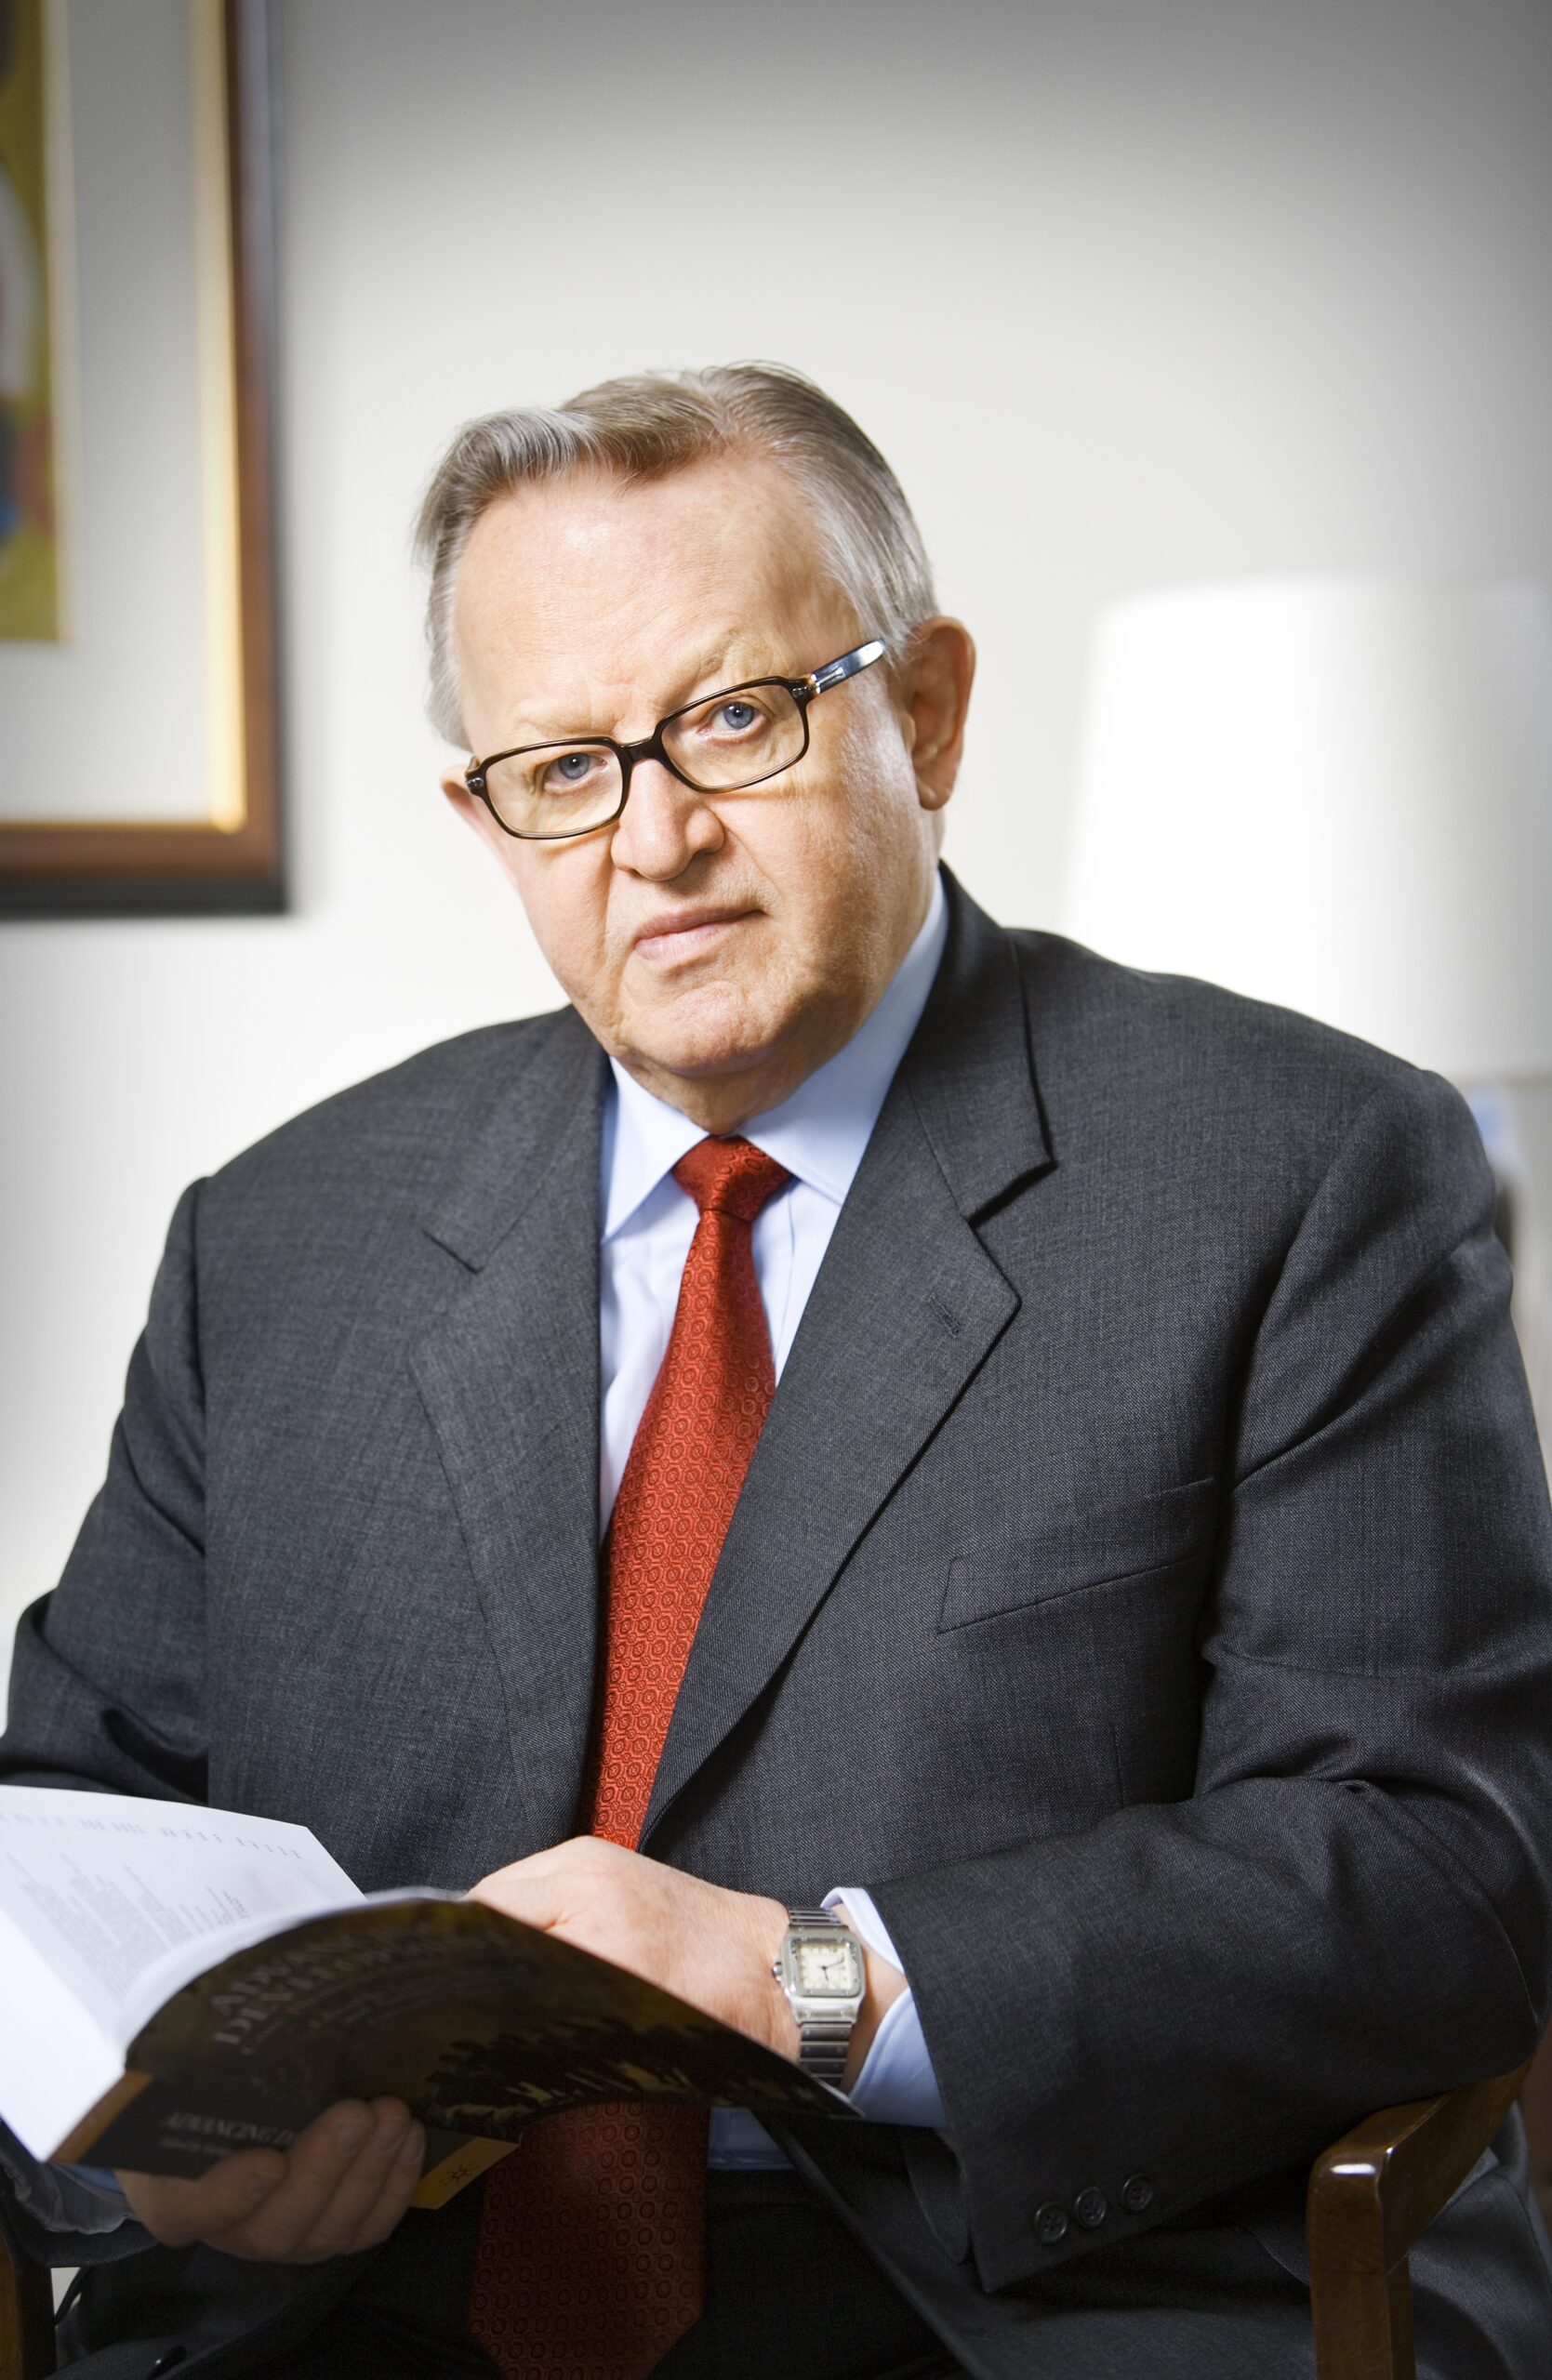 2008 Martti Ahtisaari, YMCA Finland, wins Nobel Prize